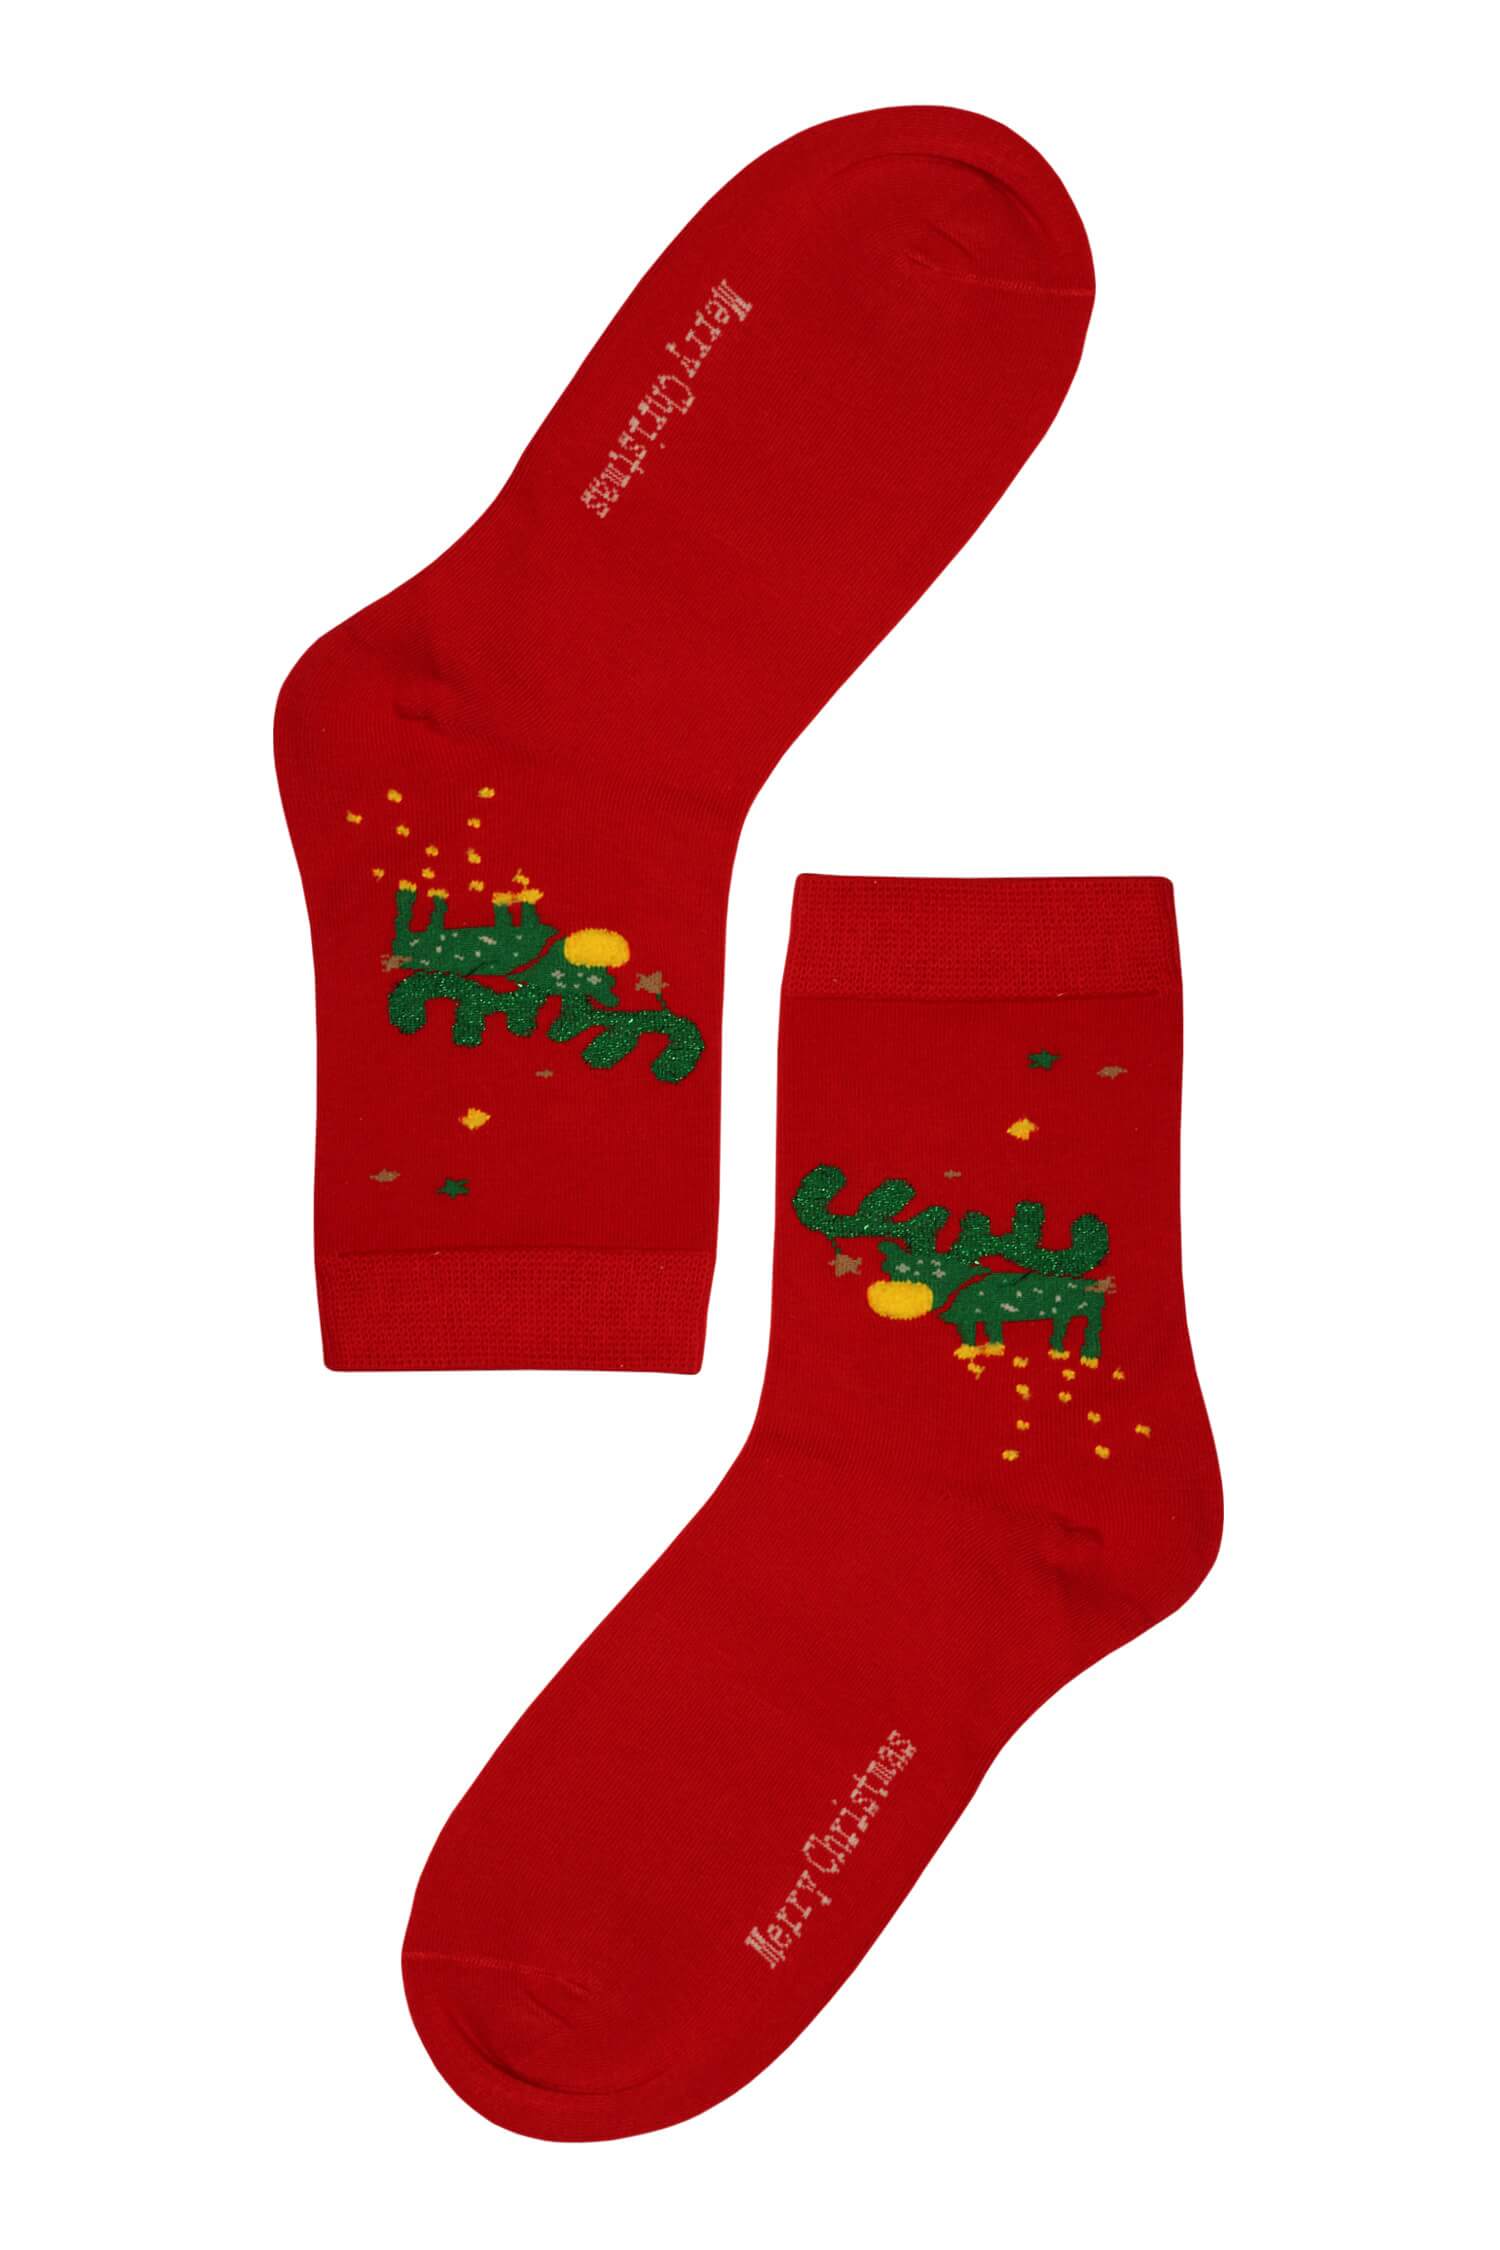 Vánoční dámské ponožky Zelený sob 35-38 červená